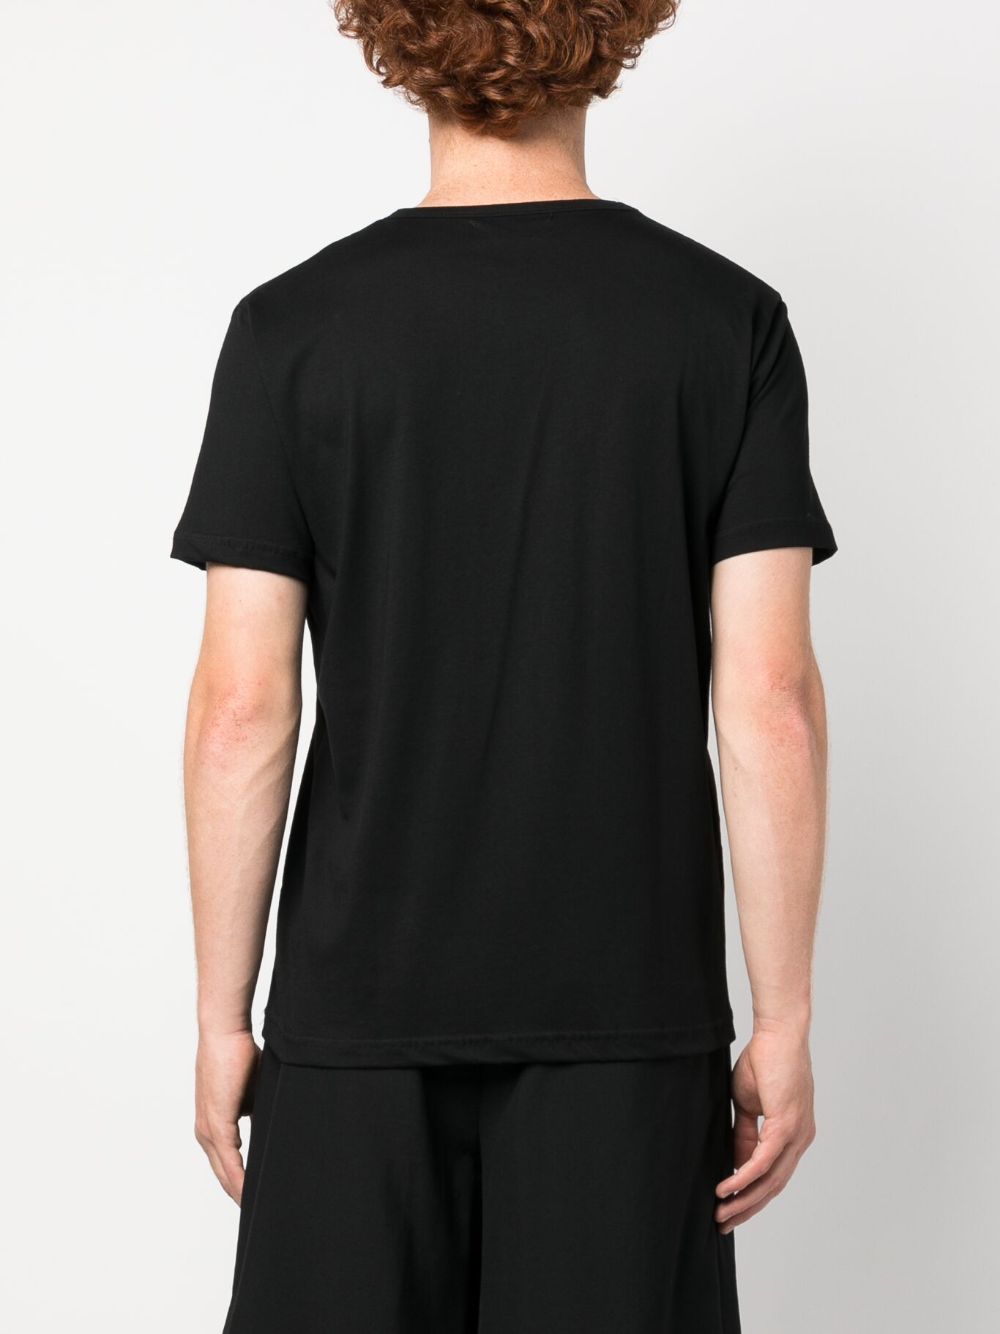 Société Anonyme graphic-print Cotton T-shirt - Farfetch